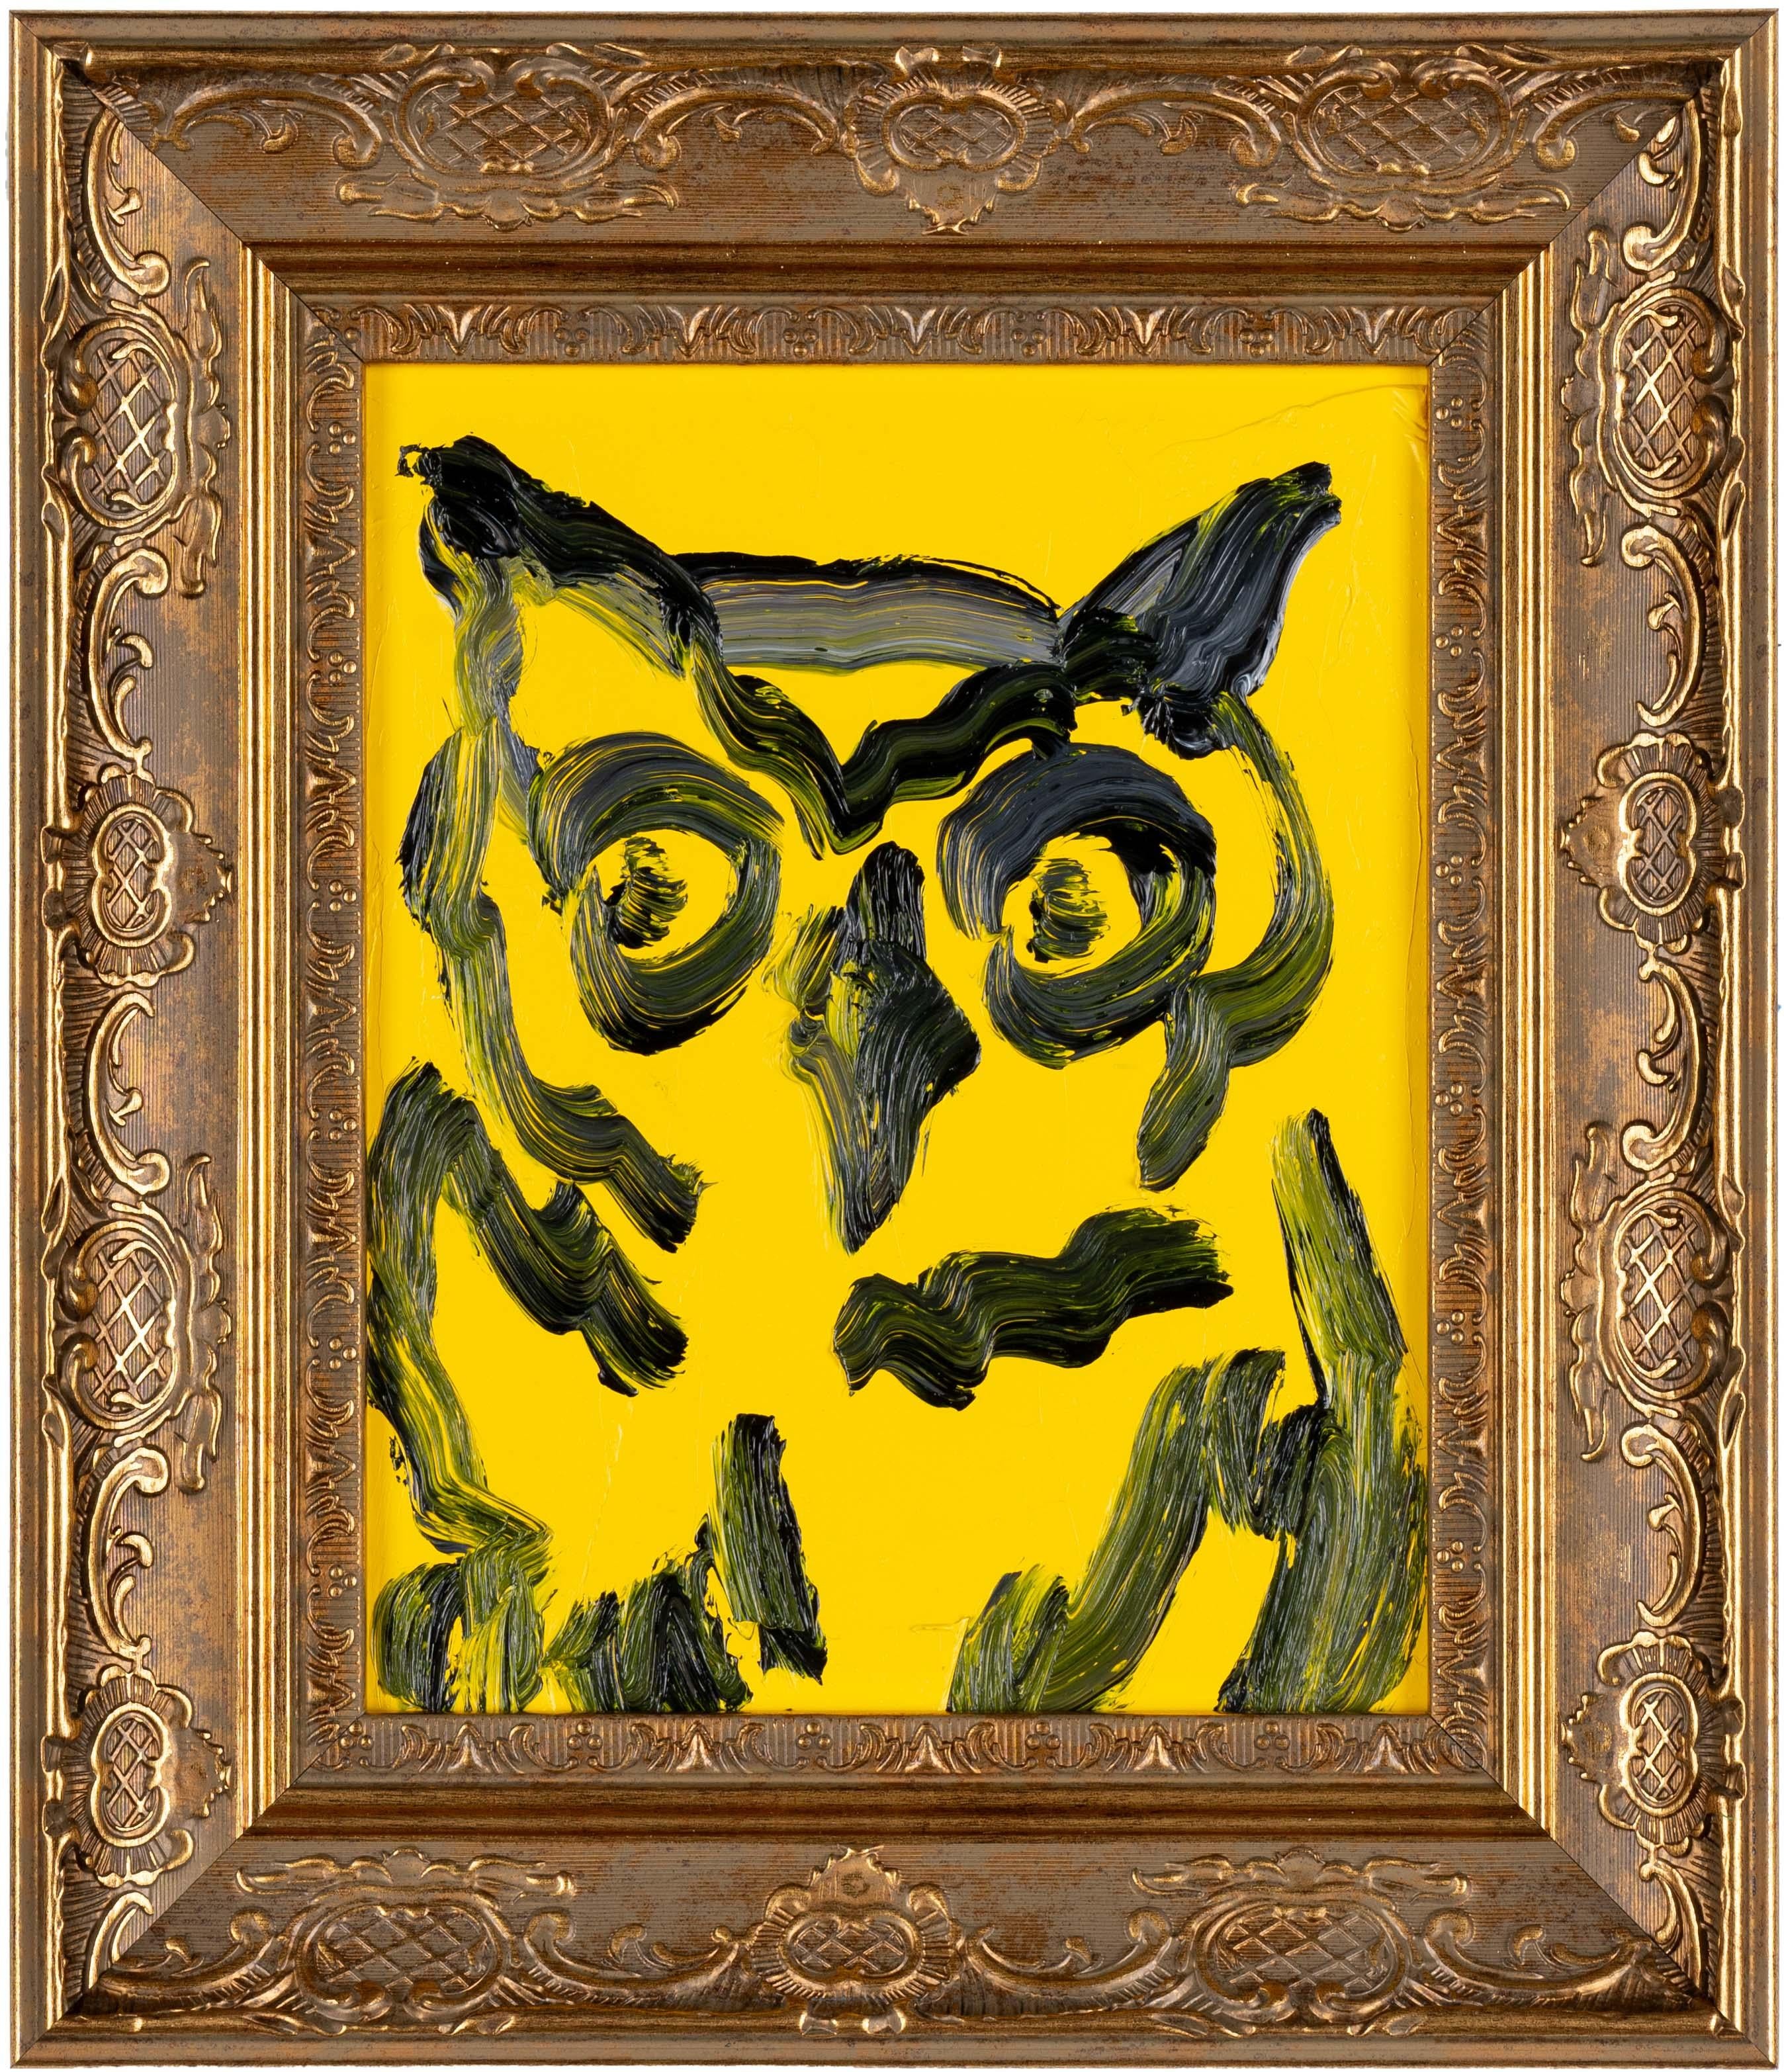 Hunt Slonem "Owl Seattle" Oiseau sur fond jaune
Un hibou à la gestuelle dorsale sur fond jaune. Encadré dans un cadre en bois doré antique. 

Sans cadre : 10 x 8 pouces
Encadré : 14.5 x 12.5 pouces
*Les peintures sont encadrées - Veuillez noter que